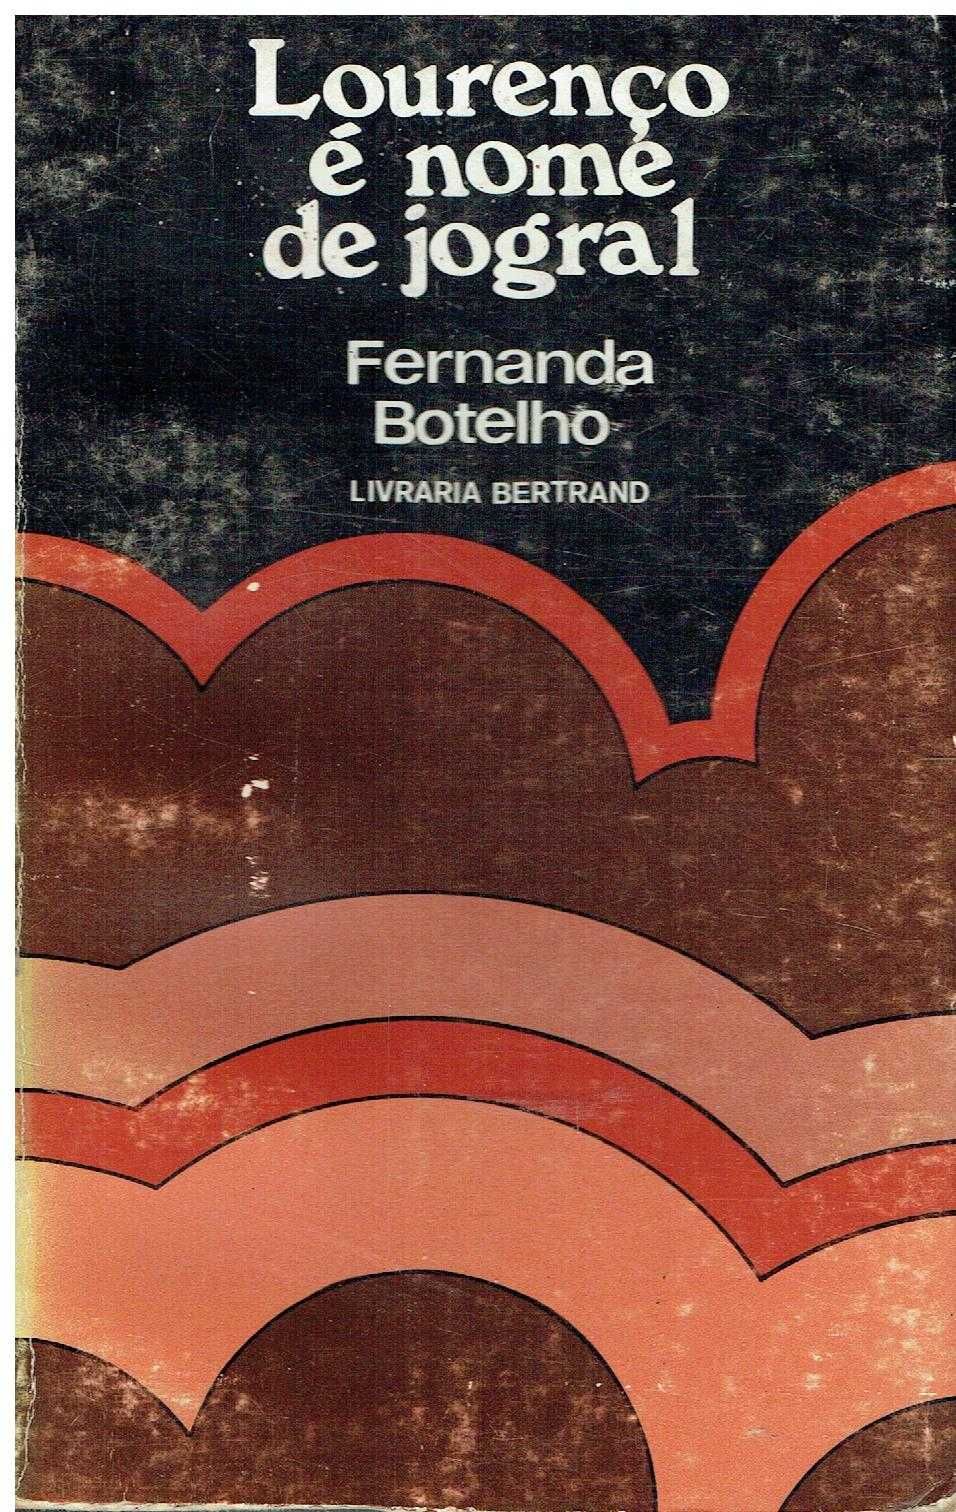 4905

Lourenço é Nome de Jogral- 1ª edição
de Fernanda Botelho